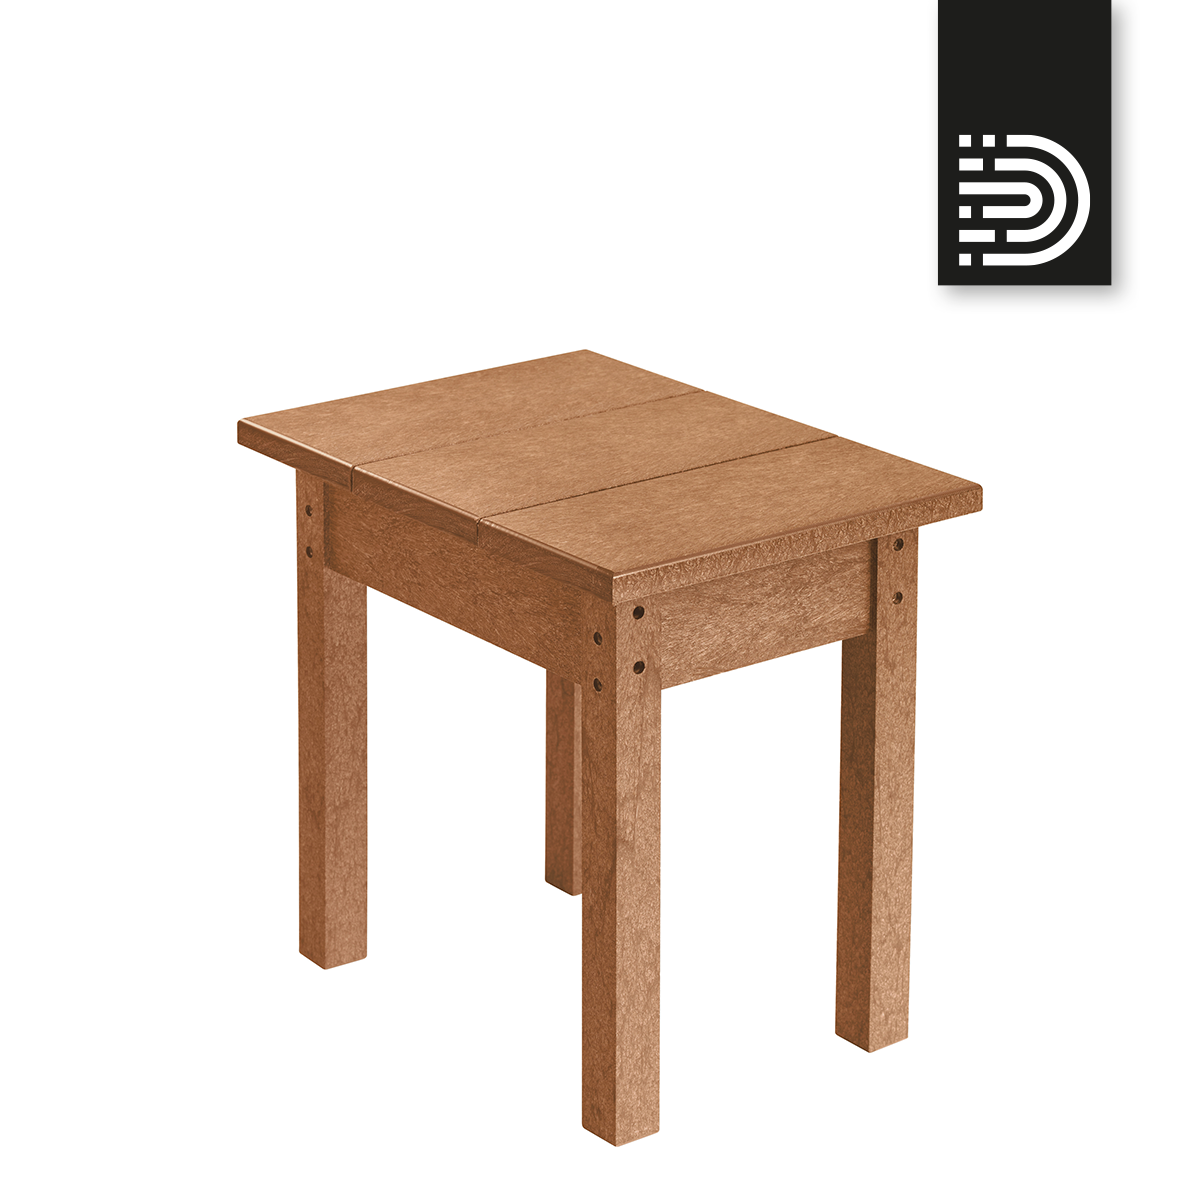 T01 small rectangular table - cedar 08